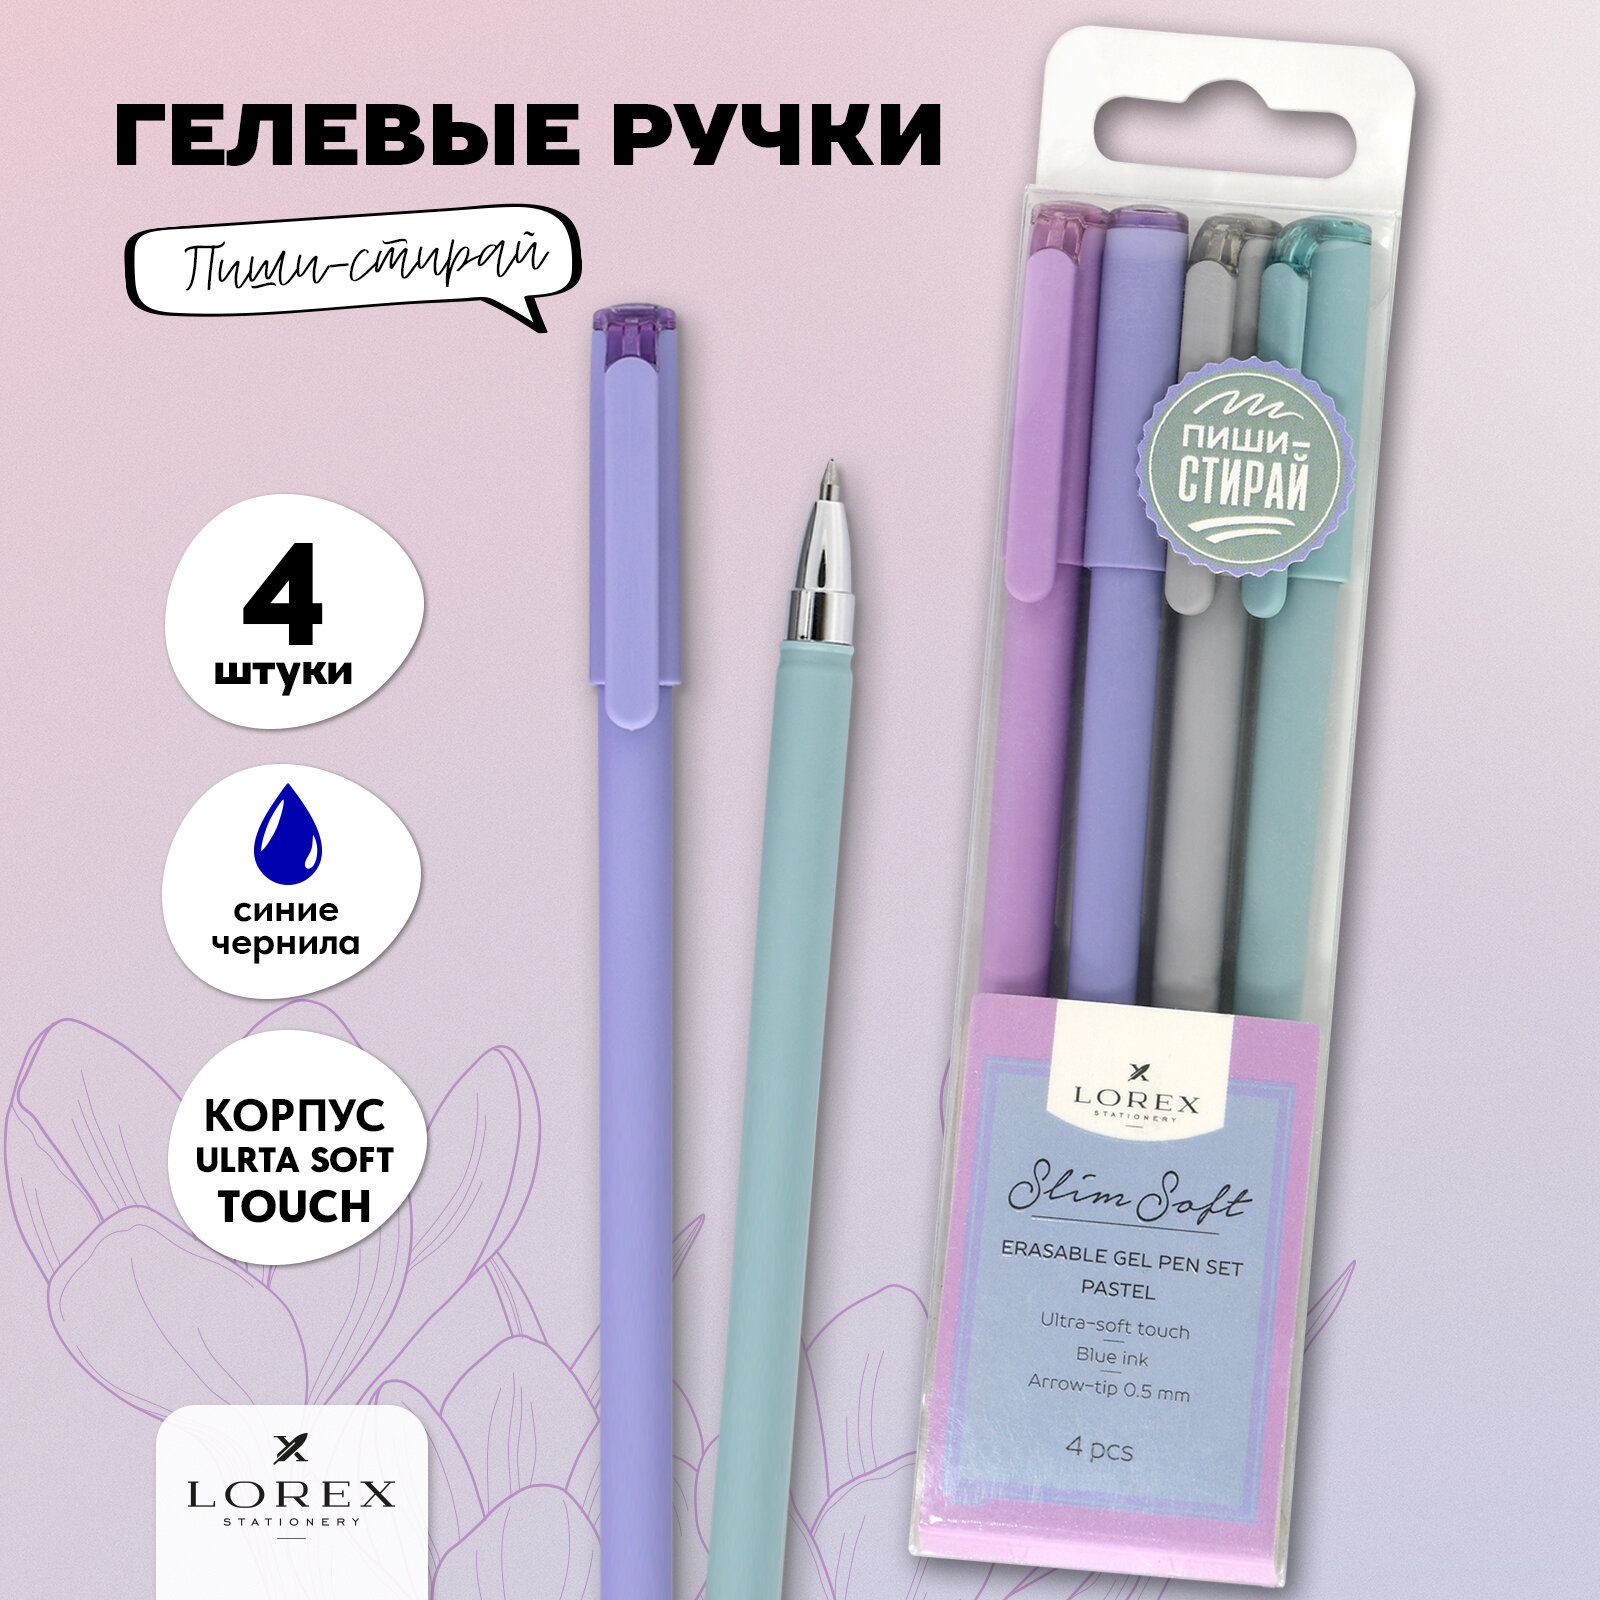 Ручки пиши-стирай, гелевые, 4 штуки, Lorex Pastel Slim Soft